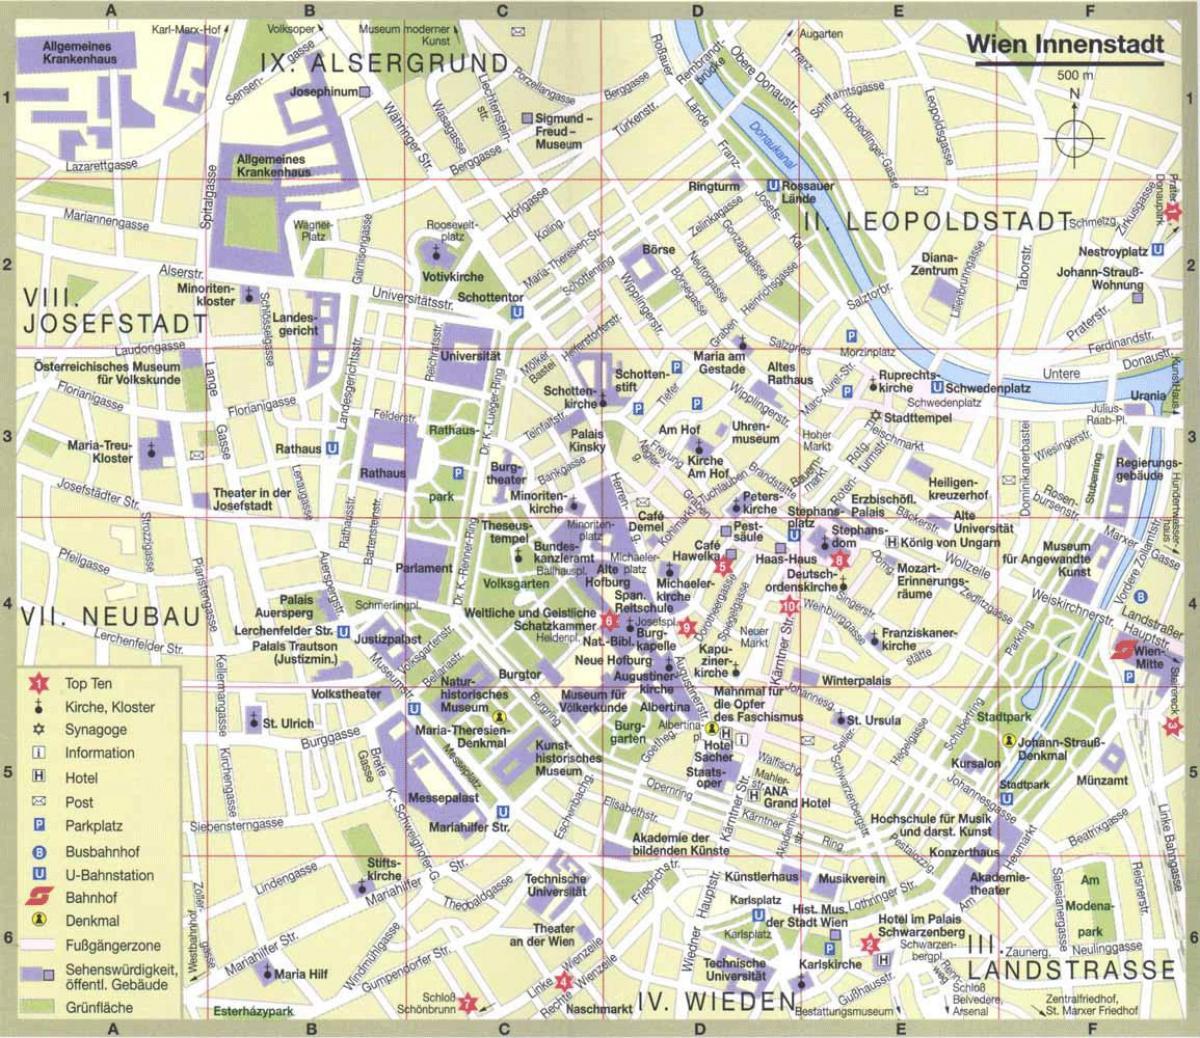 Wien શહેર નકશો